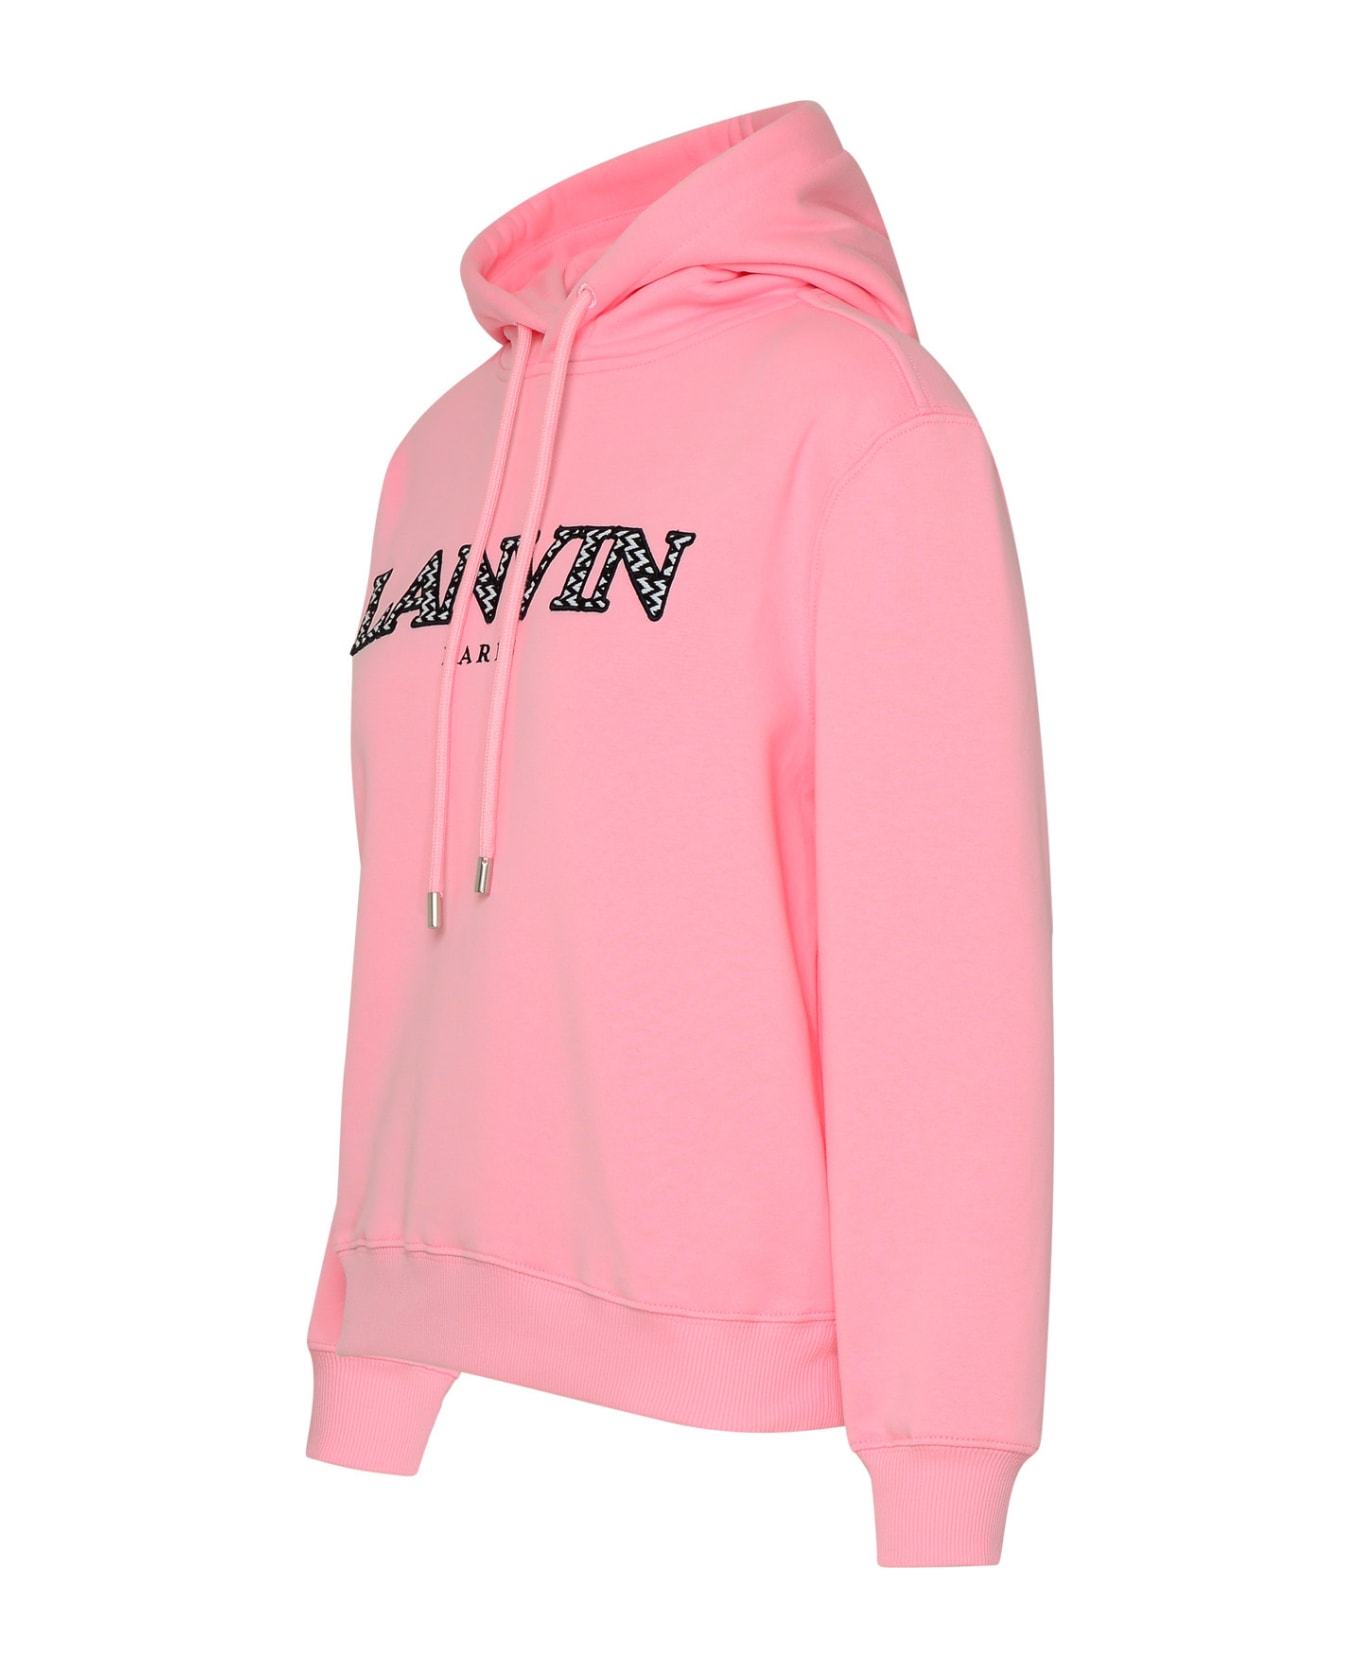 Lanvin Rose Cotton Sweatshirt - Pink